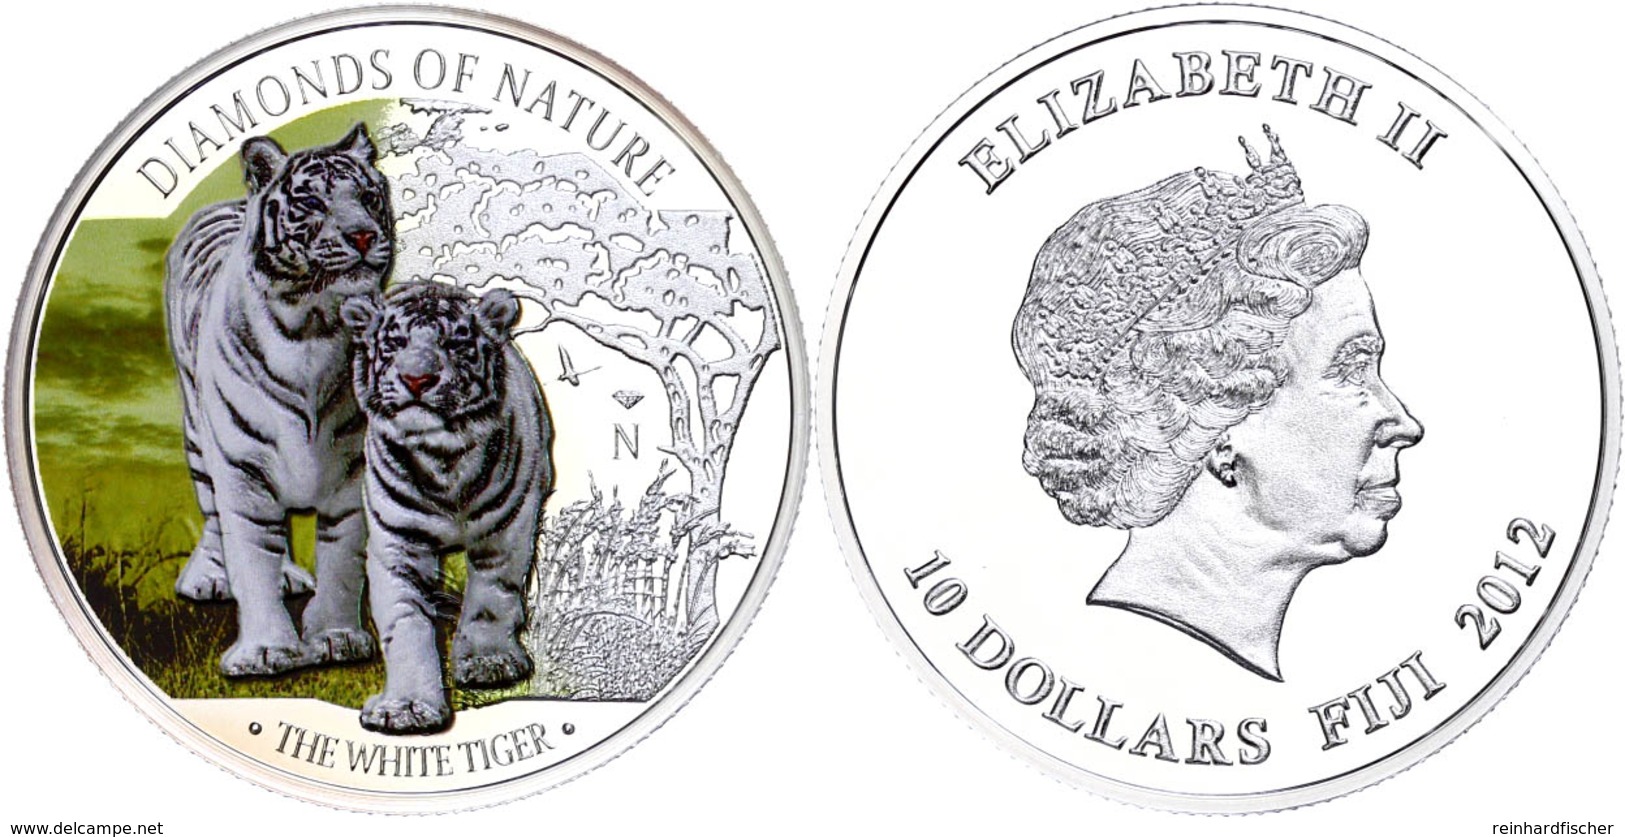 10 Dollars, 2012, Weißer Tiger, 1 Unze Silber, Coloriert, Etui Mit OVP Und Zertifikat, PP. Auflage Nur 1.000 Stück.  PP - Fiji